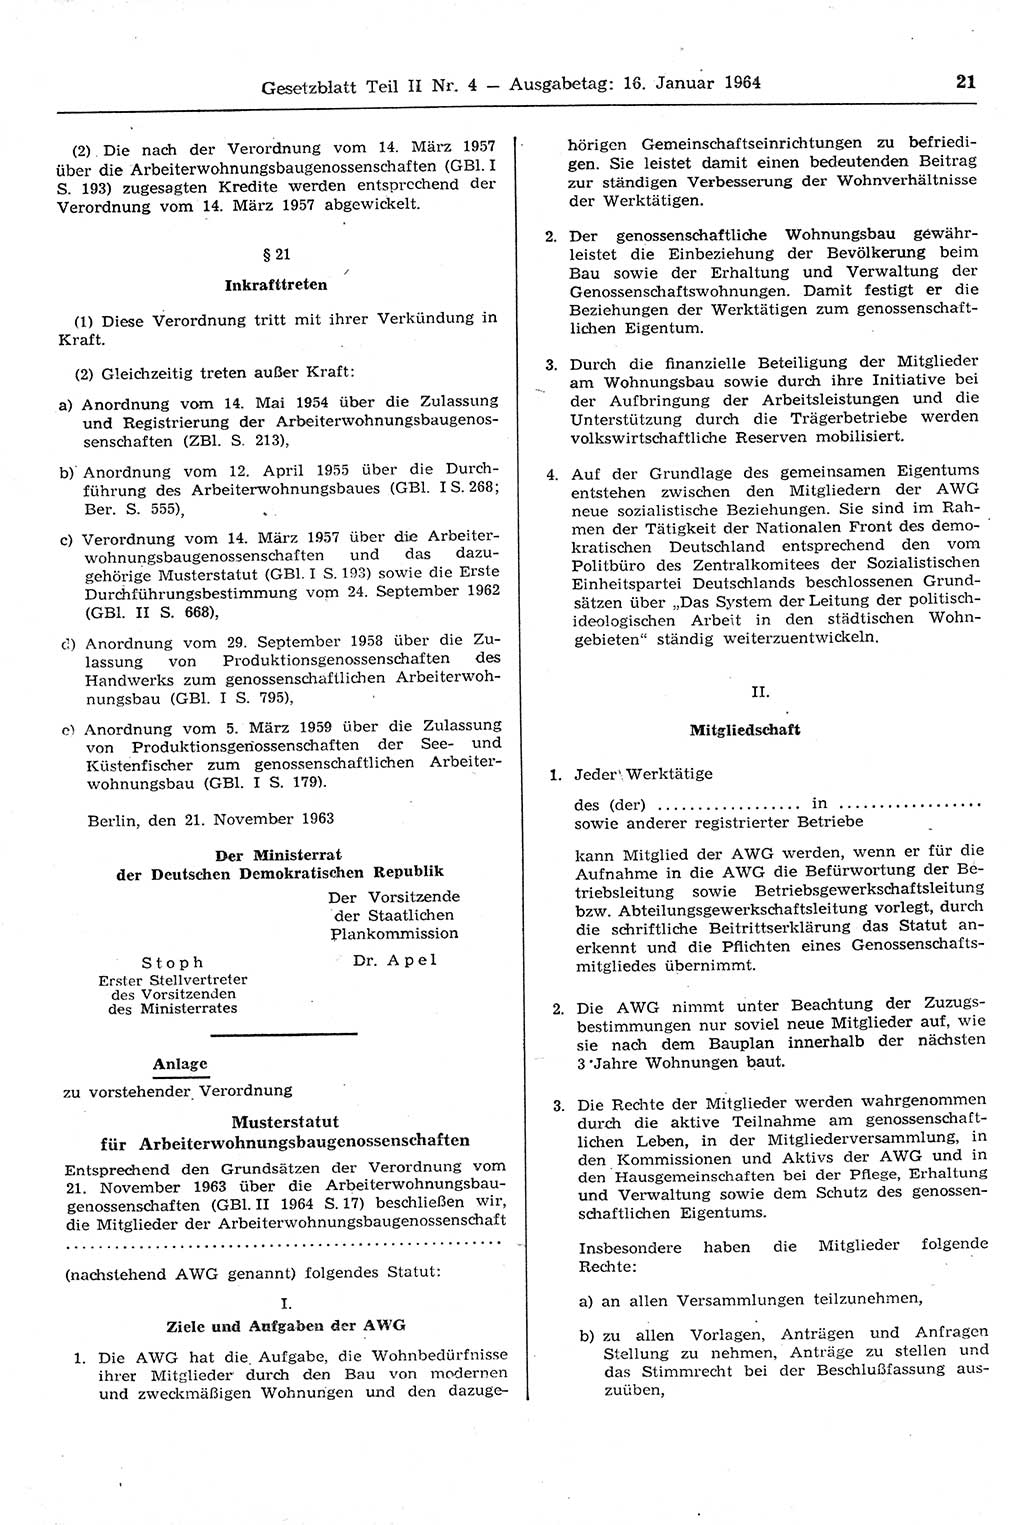 Gesetzblatt (GBl.) der Deutschen Demokratischen Republik (DDR) Teil ⅠⅠ 1964, Seite 21 (GBl. DDR ⅠⅠ 1964, S. 21)